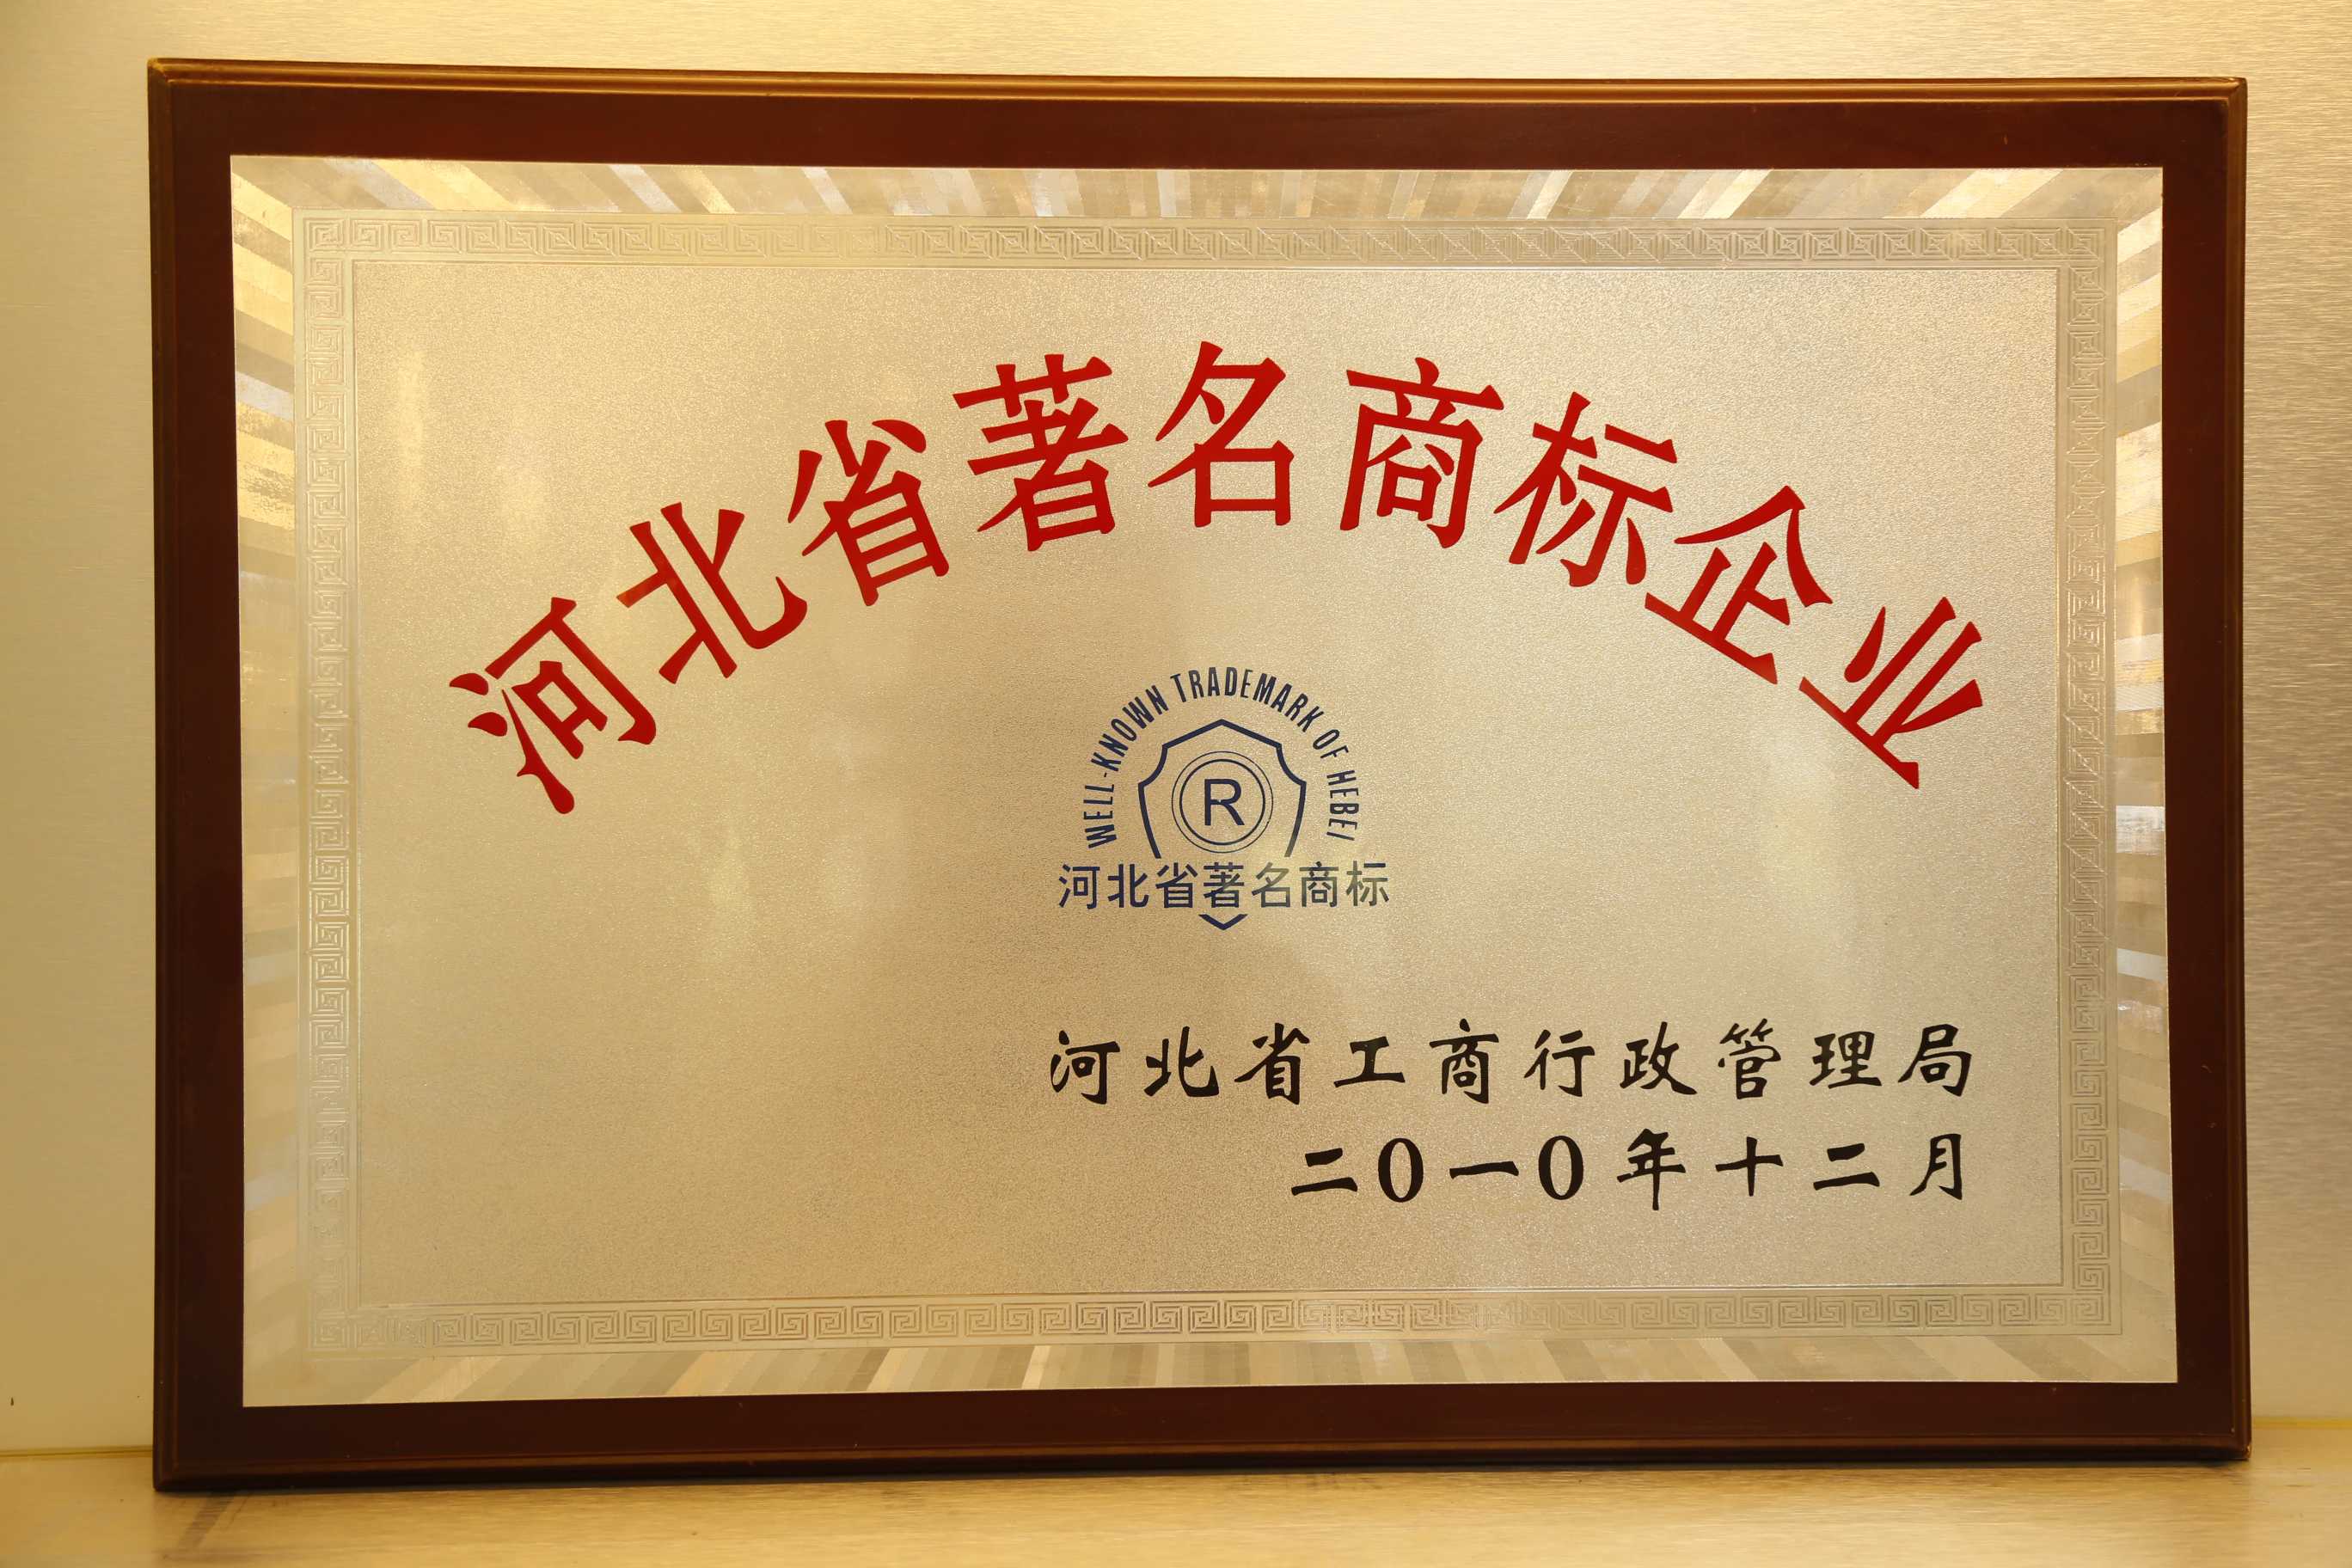 河北省著名商标企业 2010